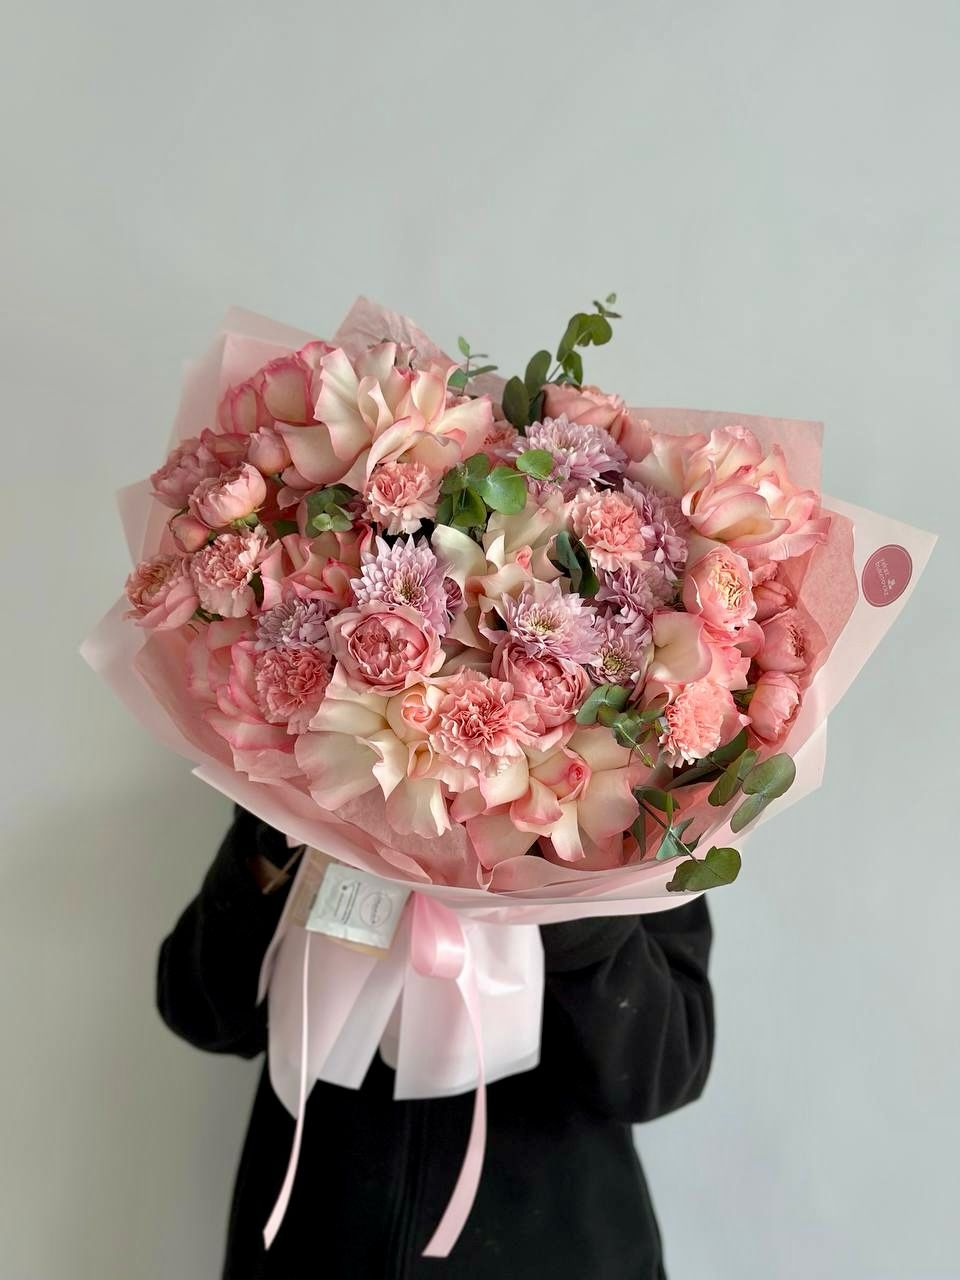 Букет "Floral Dance" из роз, гвоздик и хризантем